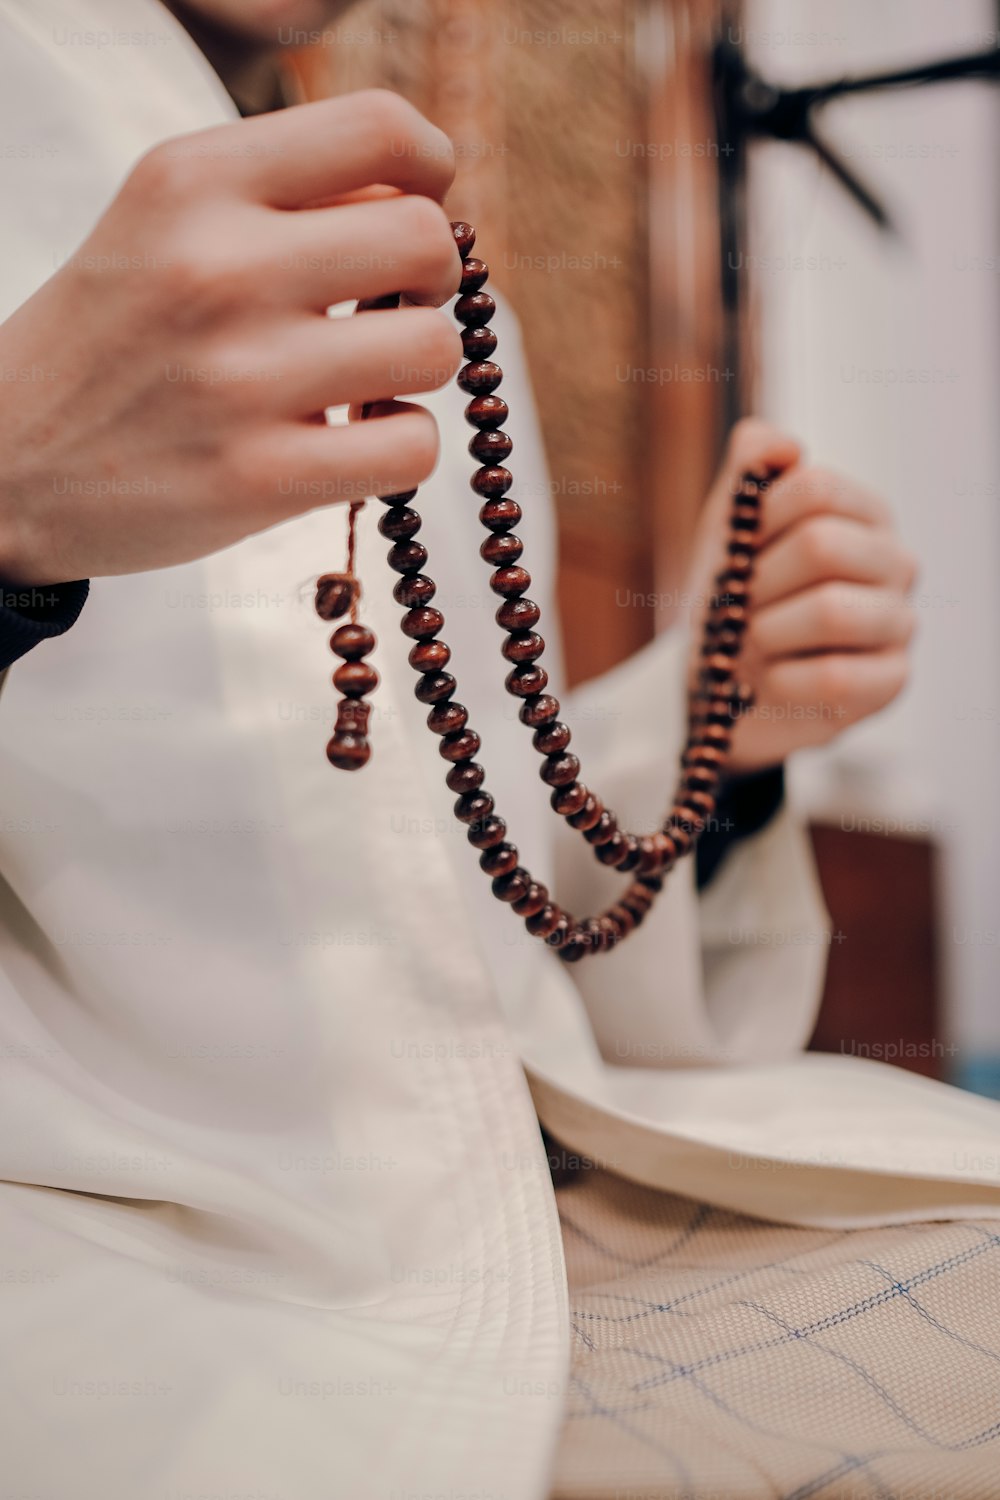 una persona sosteniendo un rosario en sus manos